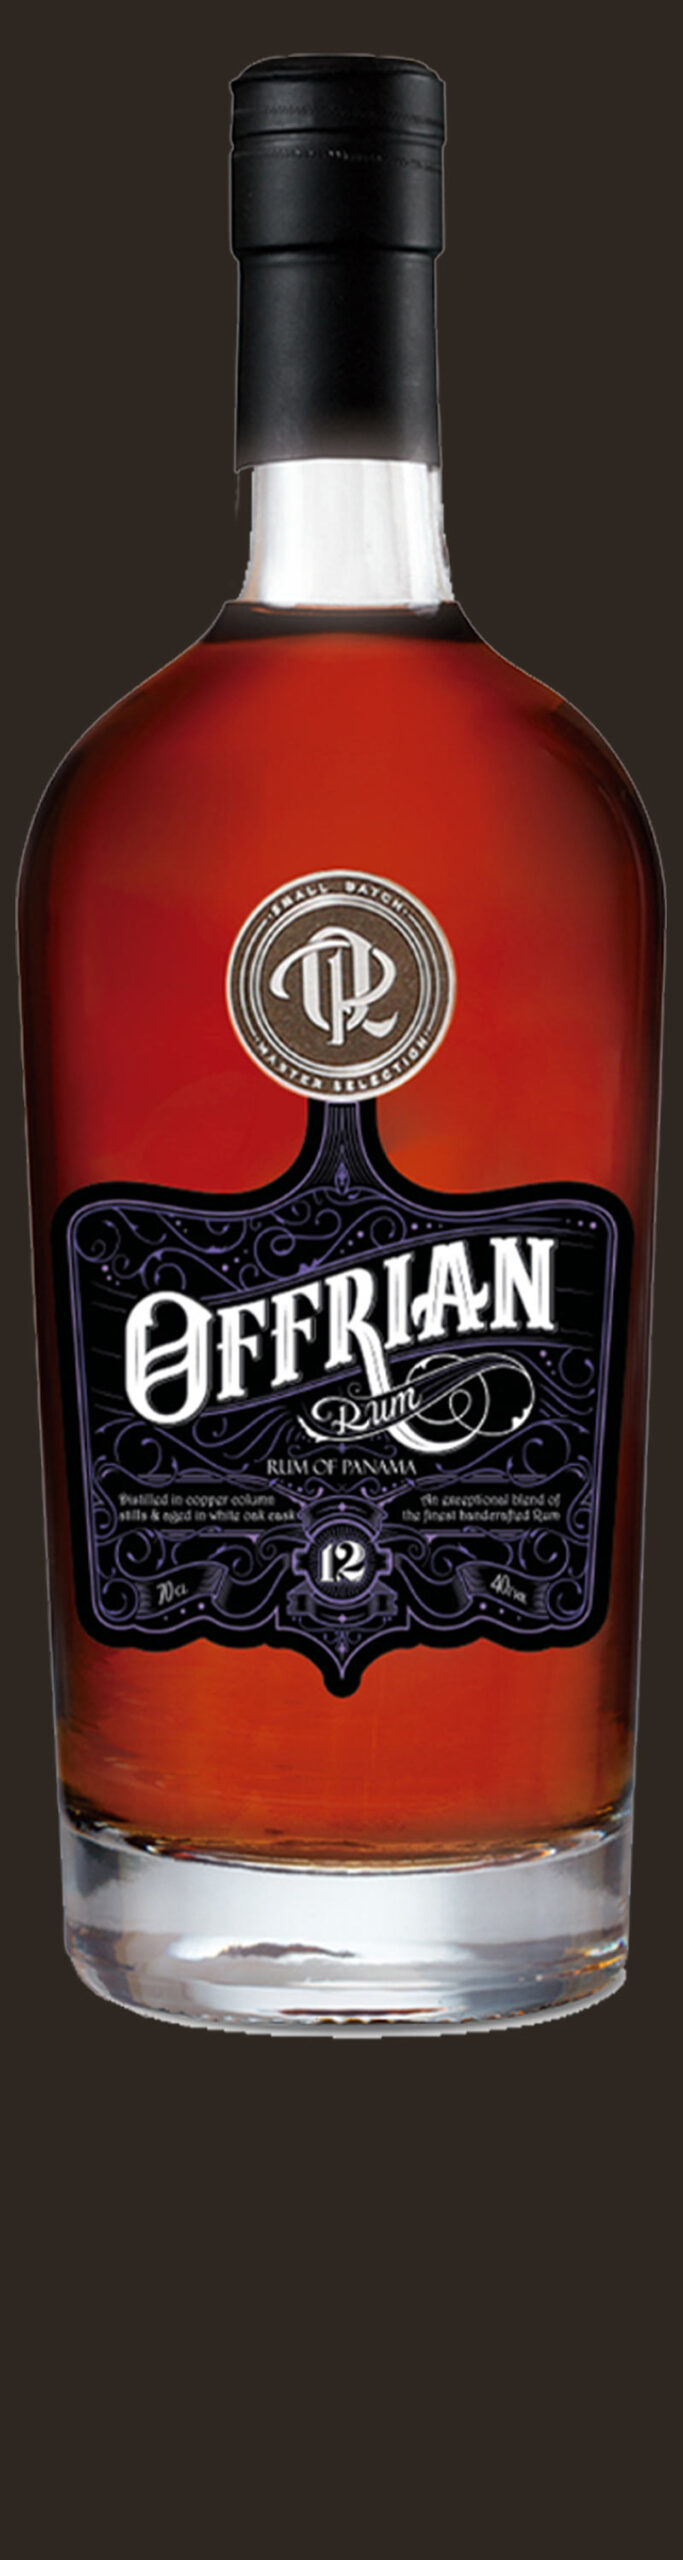 Offrian Rum 12 Años